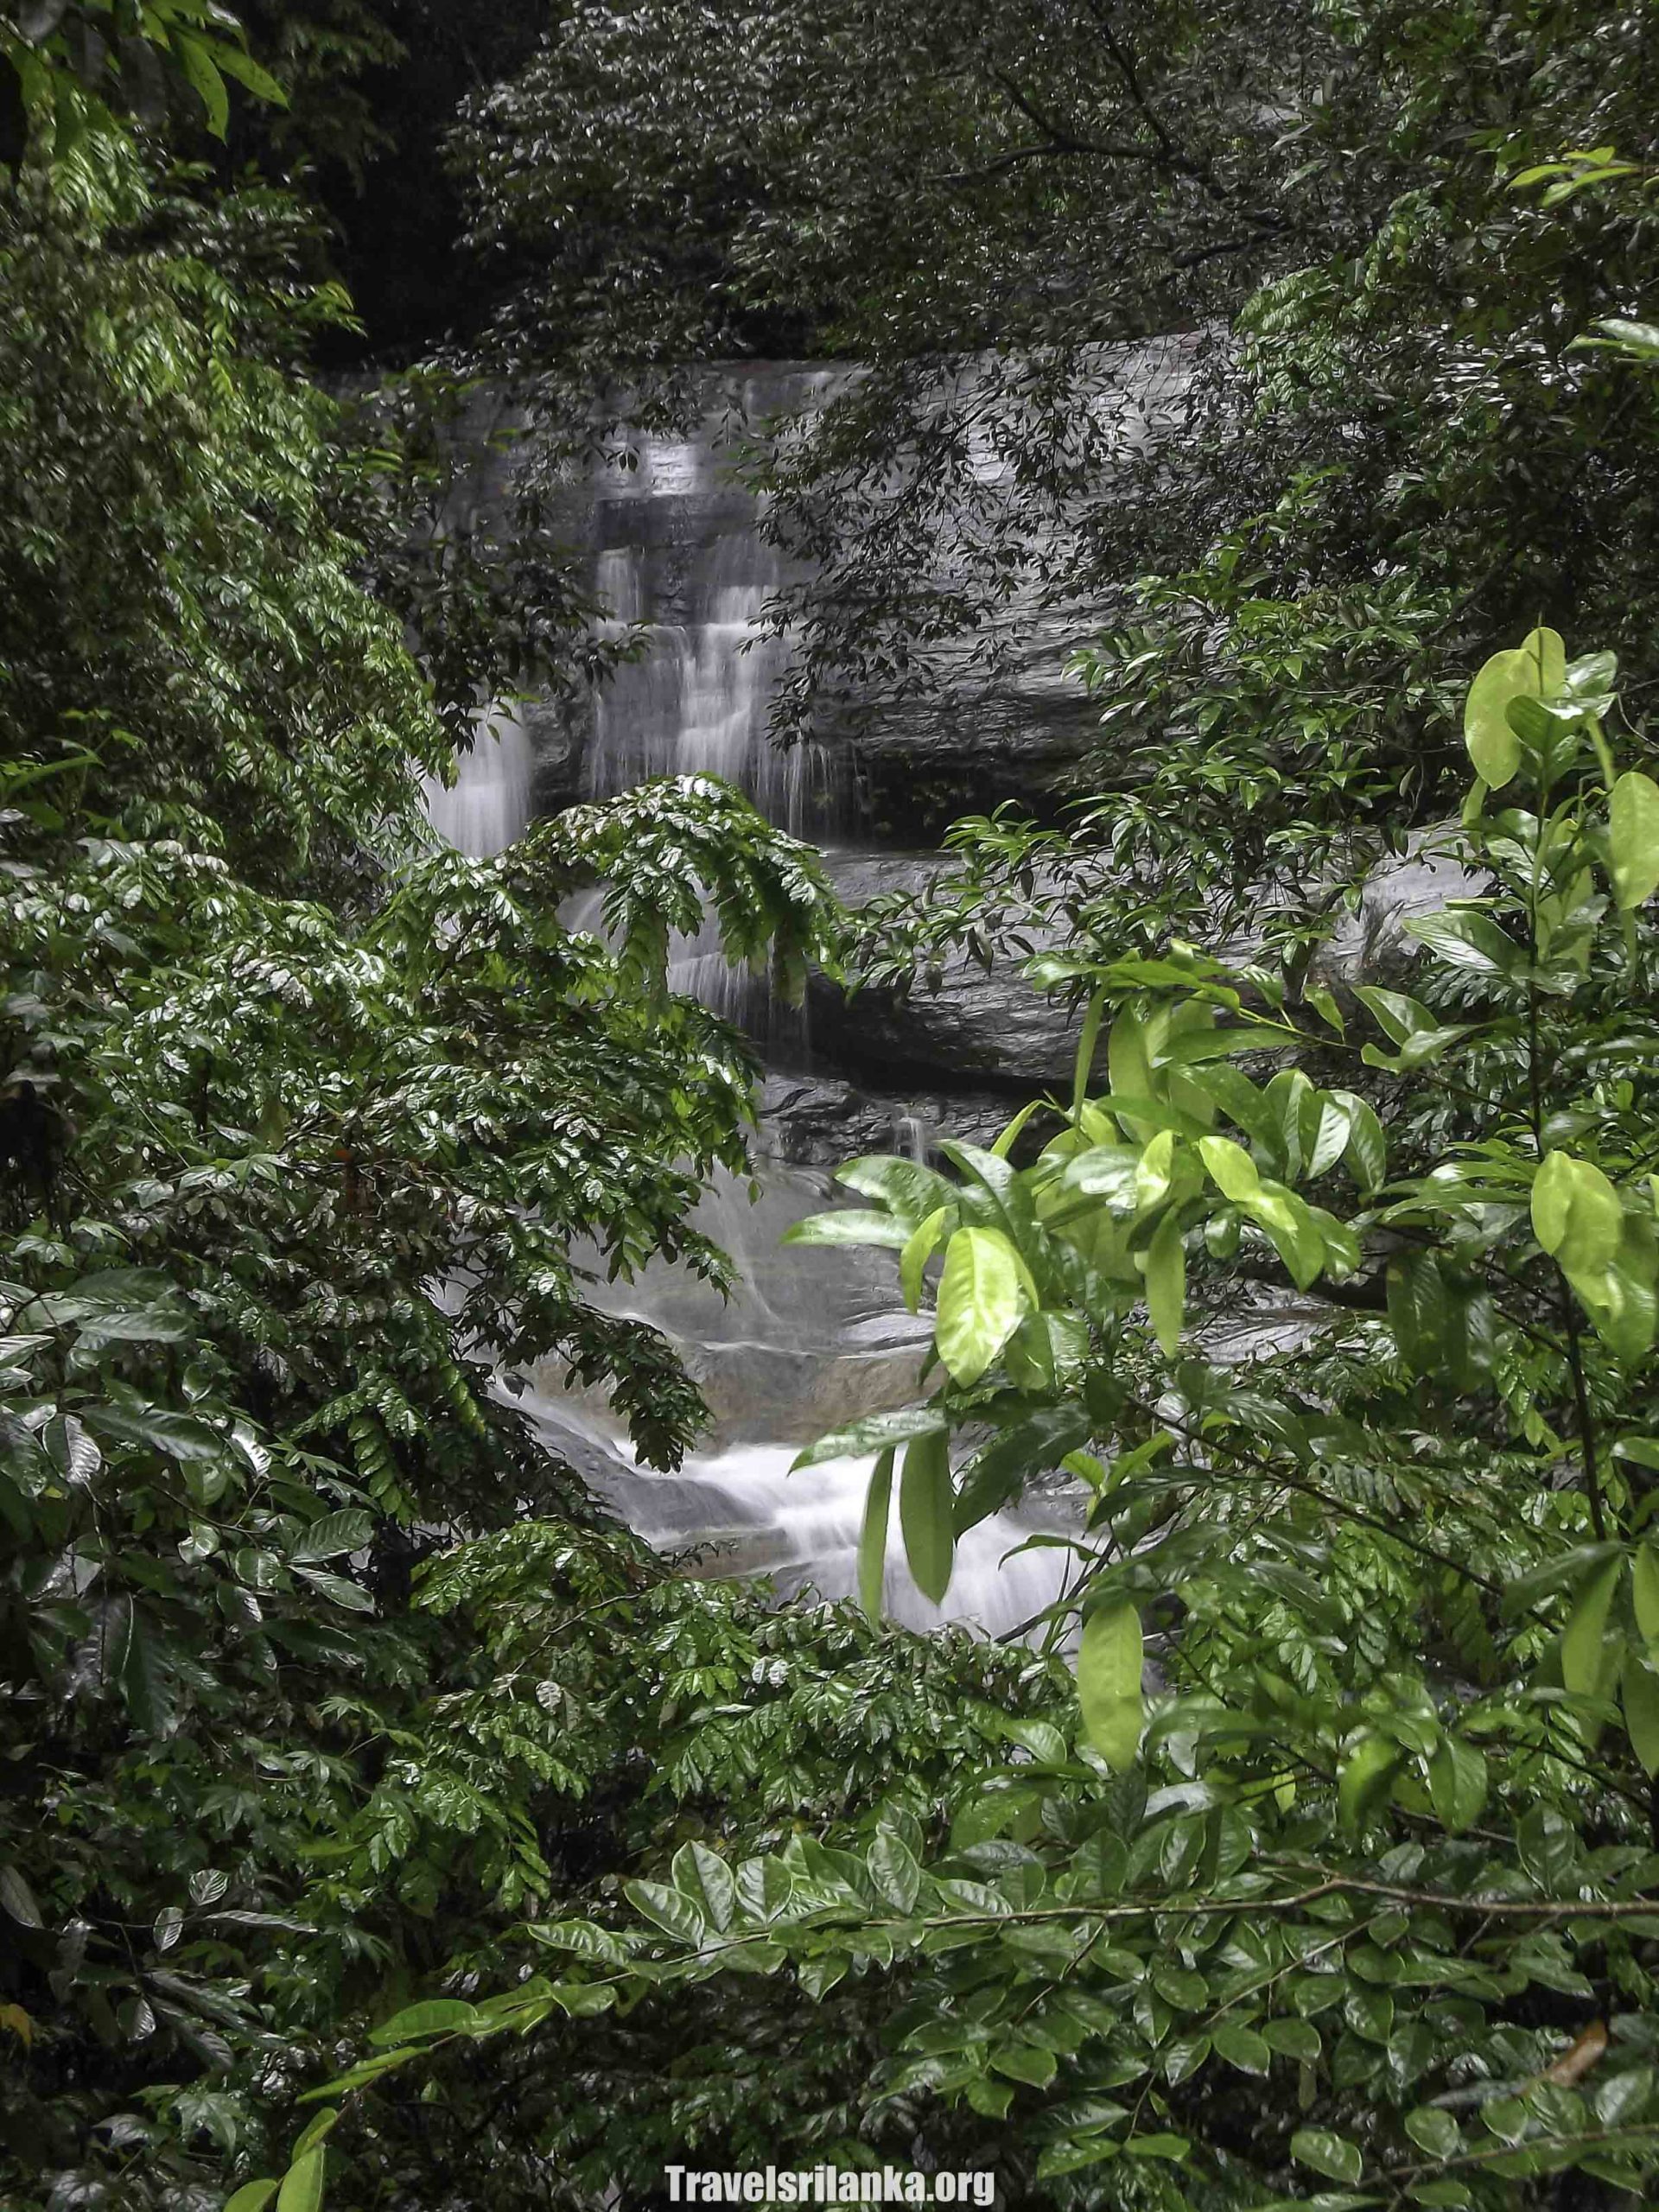 Kiriwelhinna waterfalls